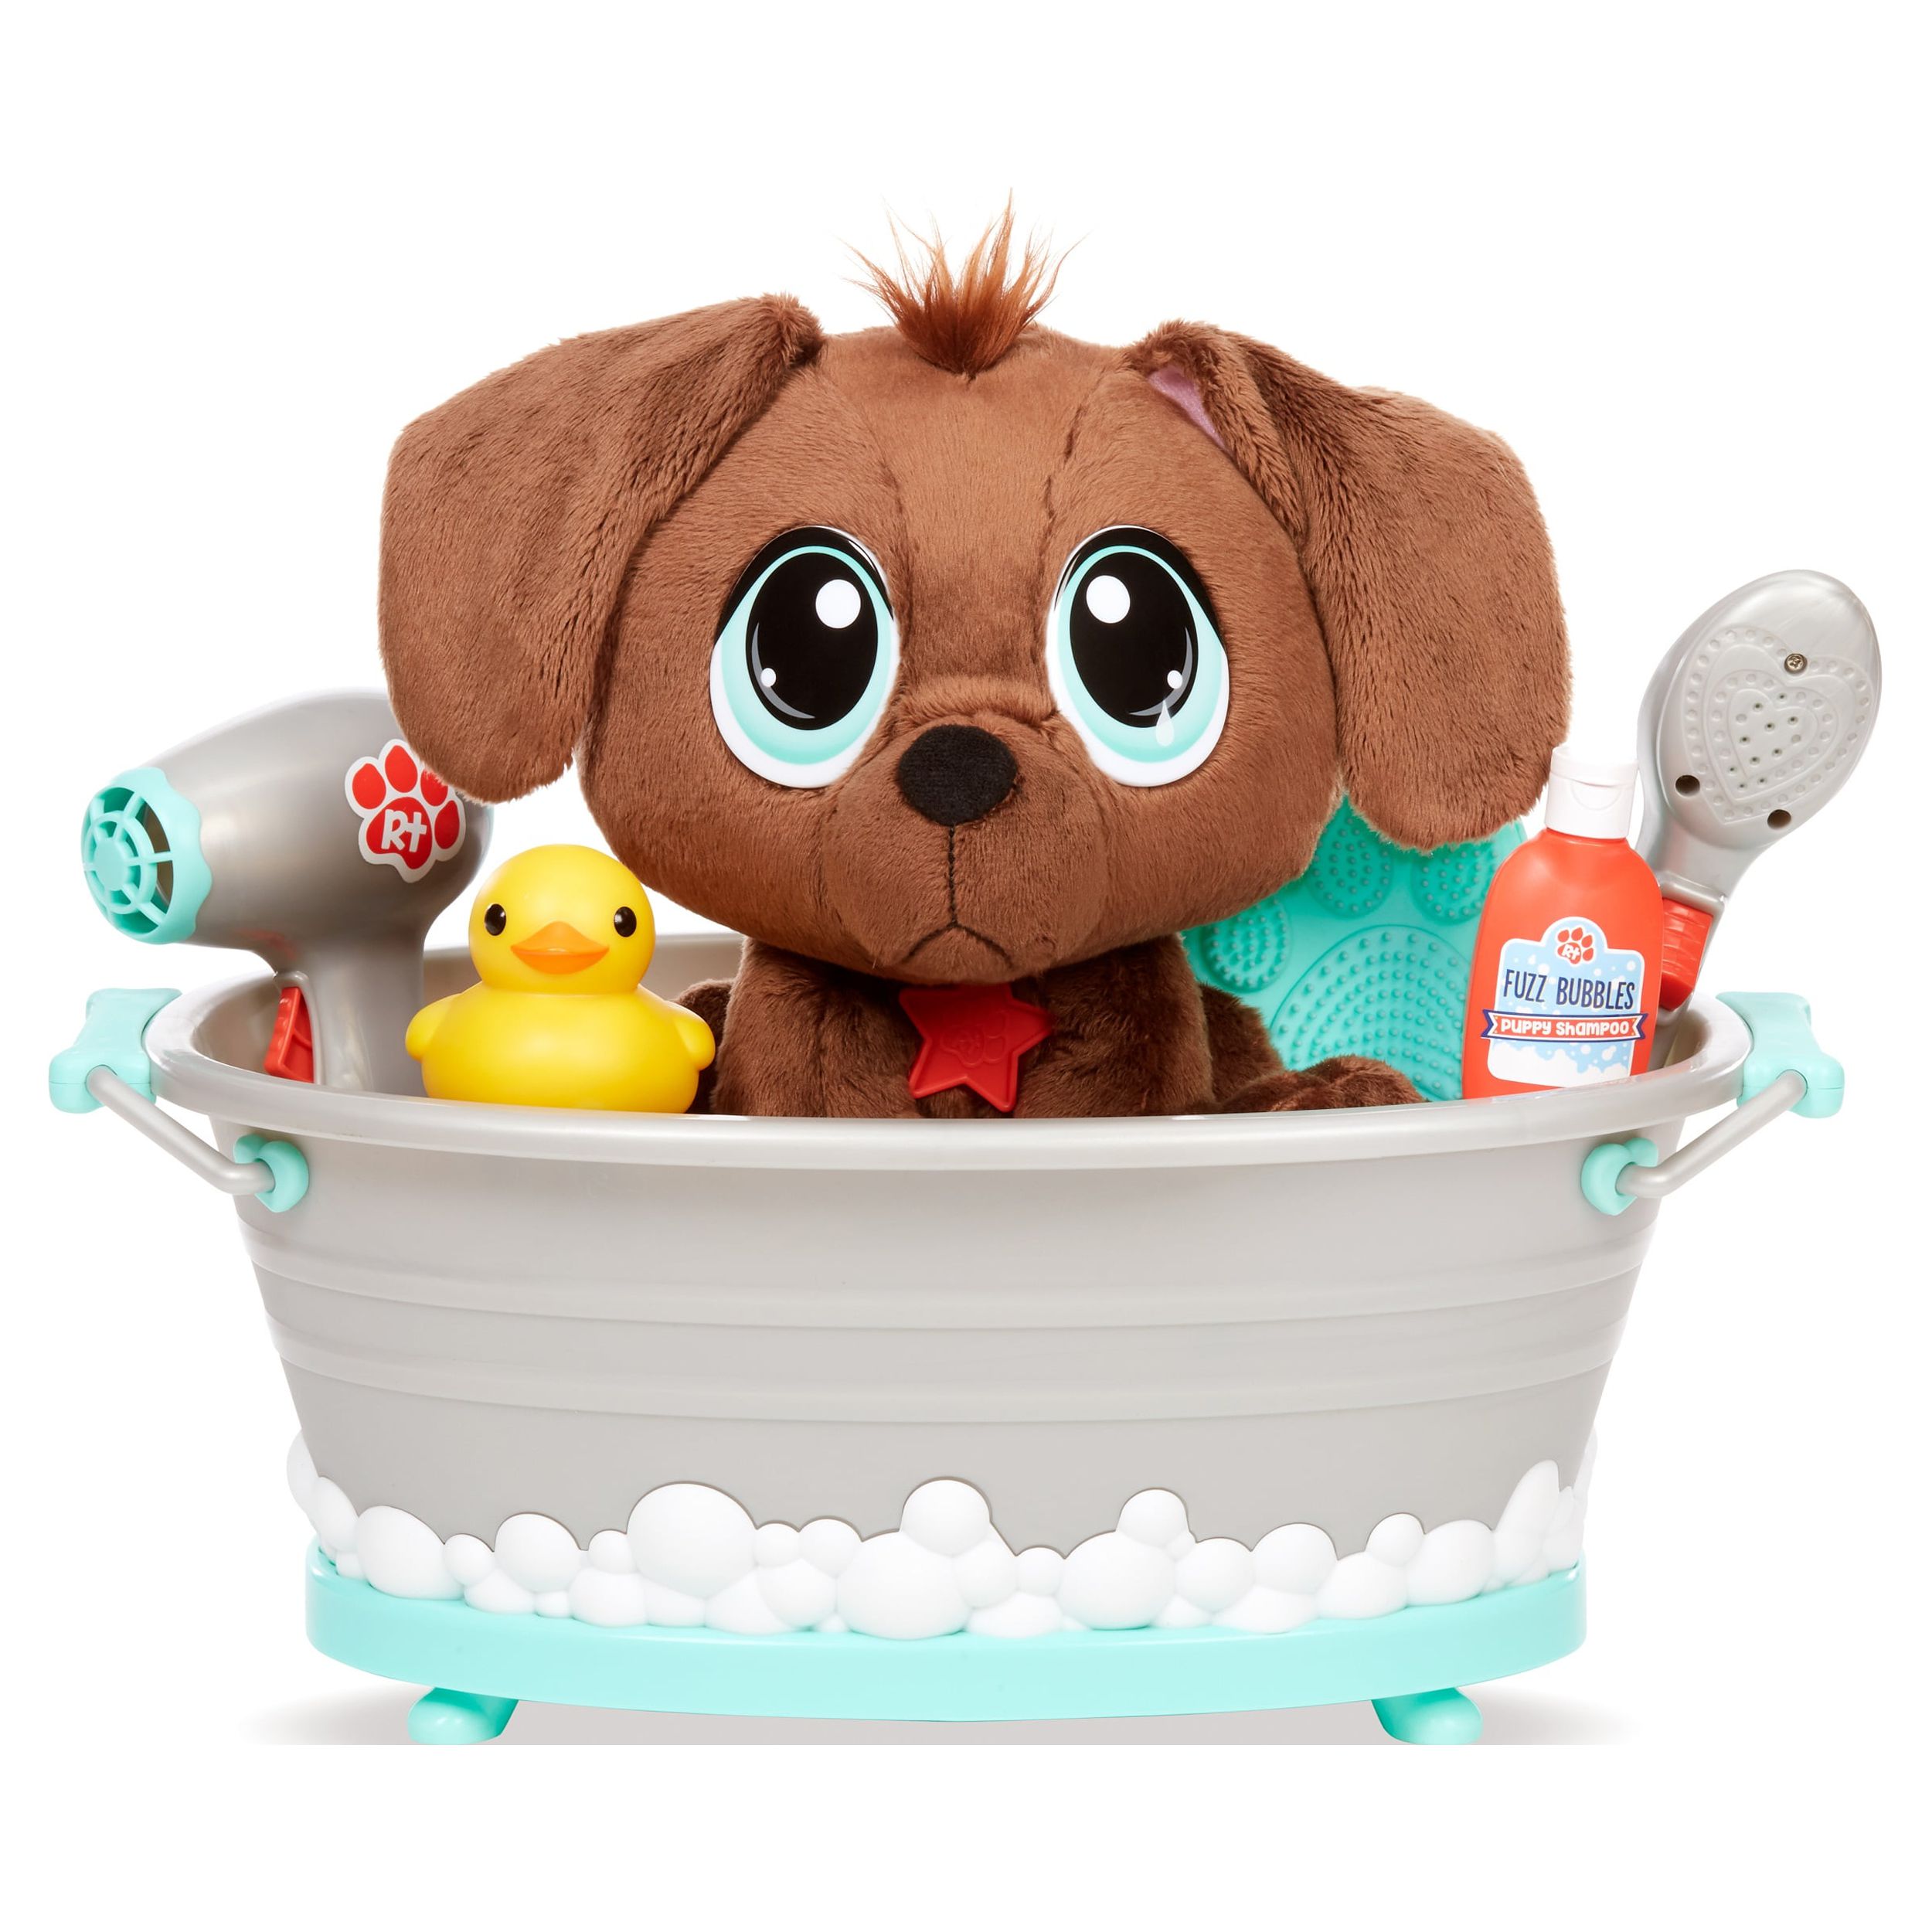 Rescue Tales Scrub 'n Groom Bathtub Toy Dog Playset - image 1 of 6